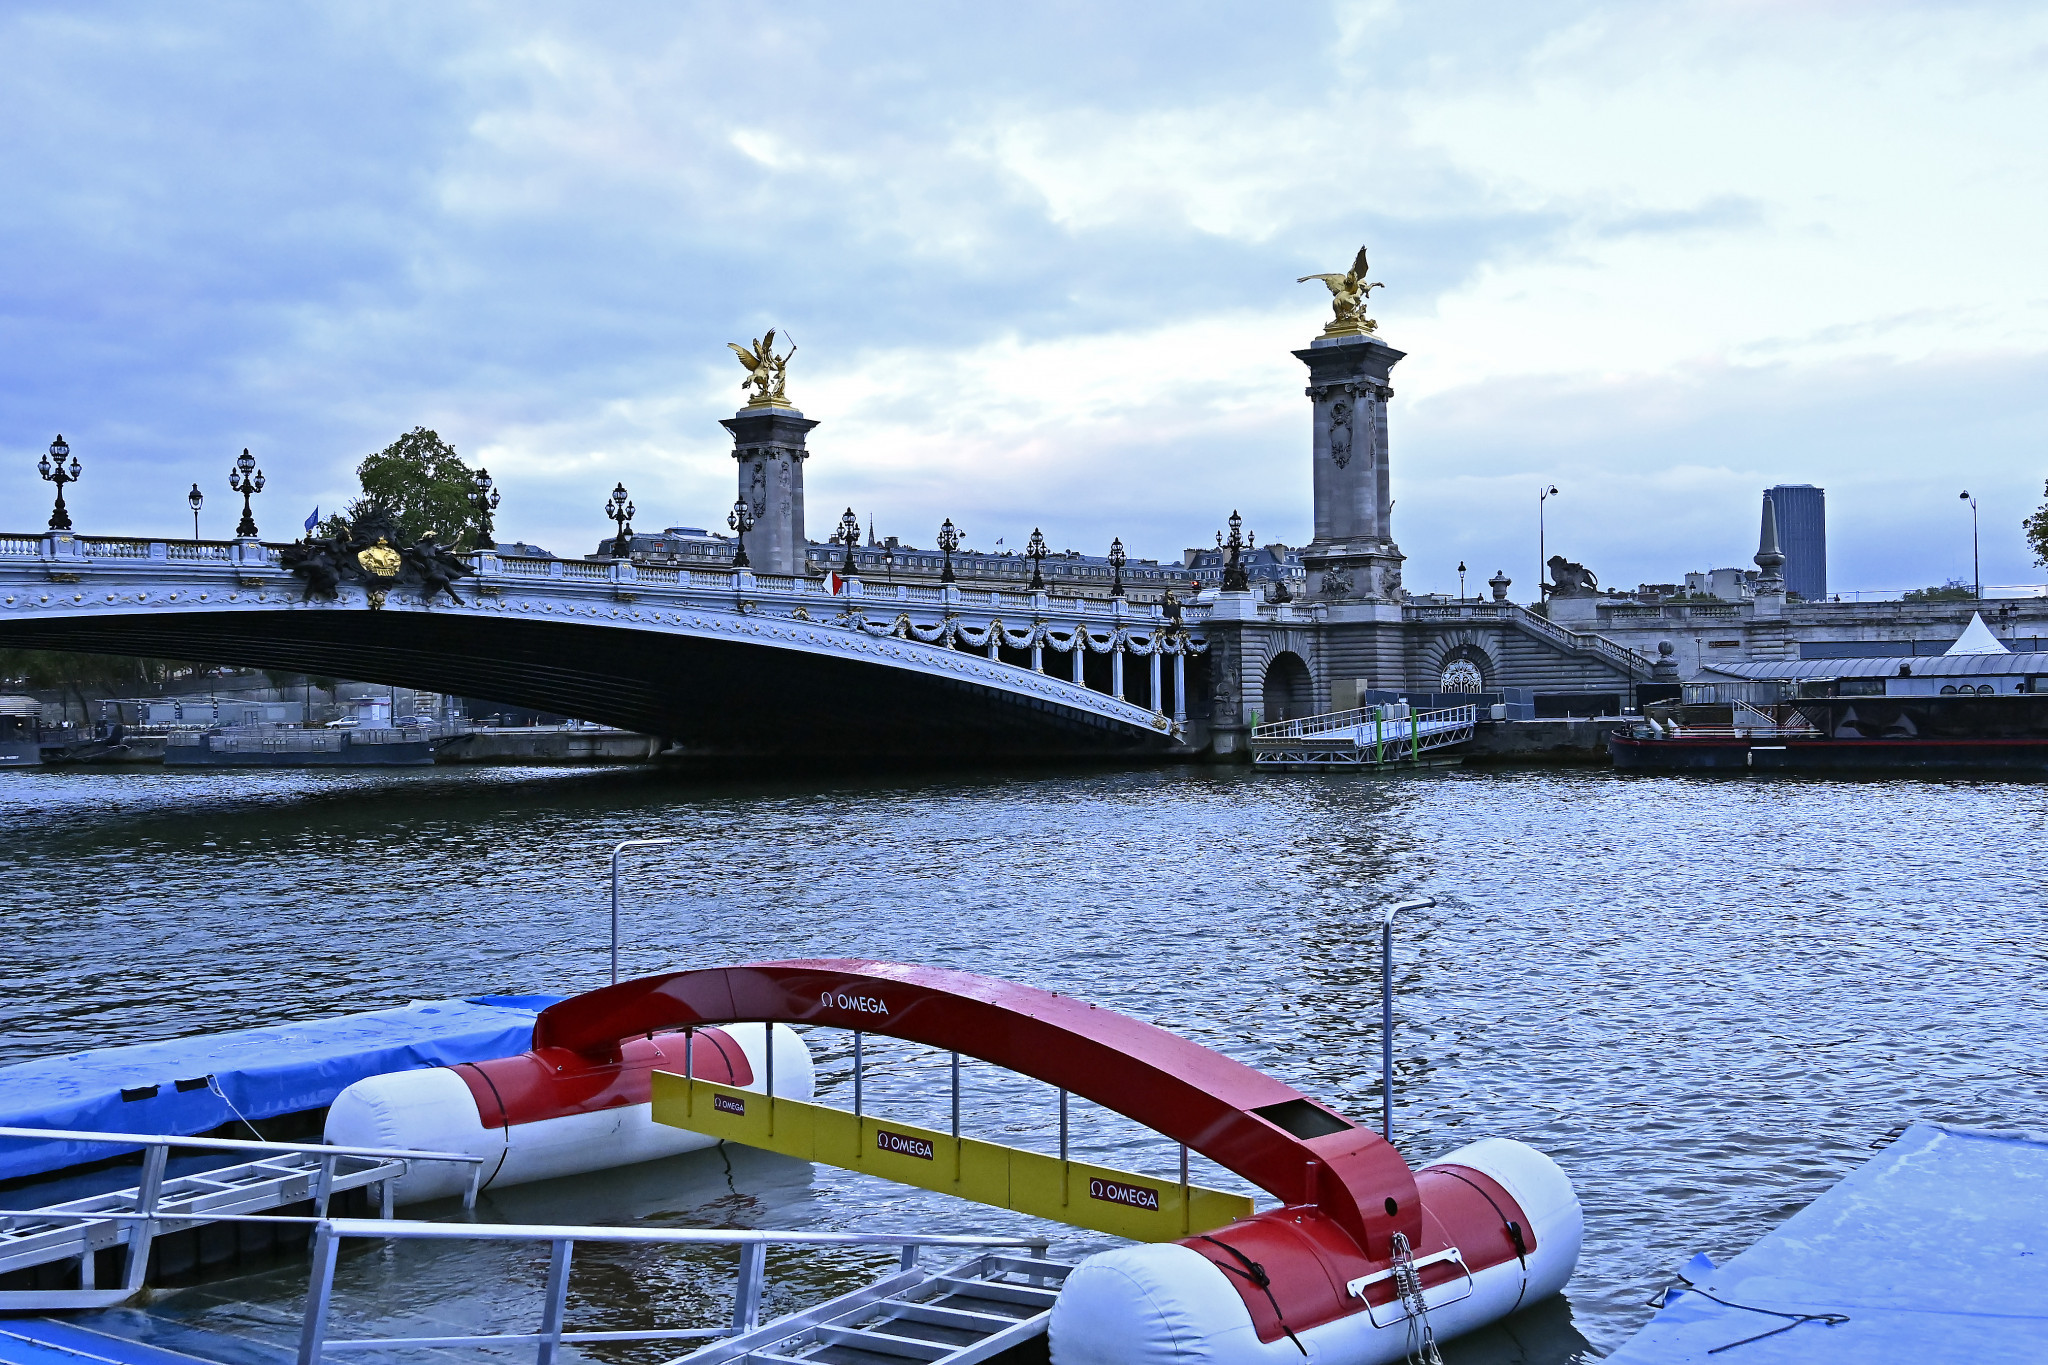 World Triathlon reveals already has alternative plan if Seine ruled unsafe for Paris 2024 test event